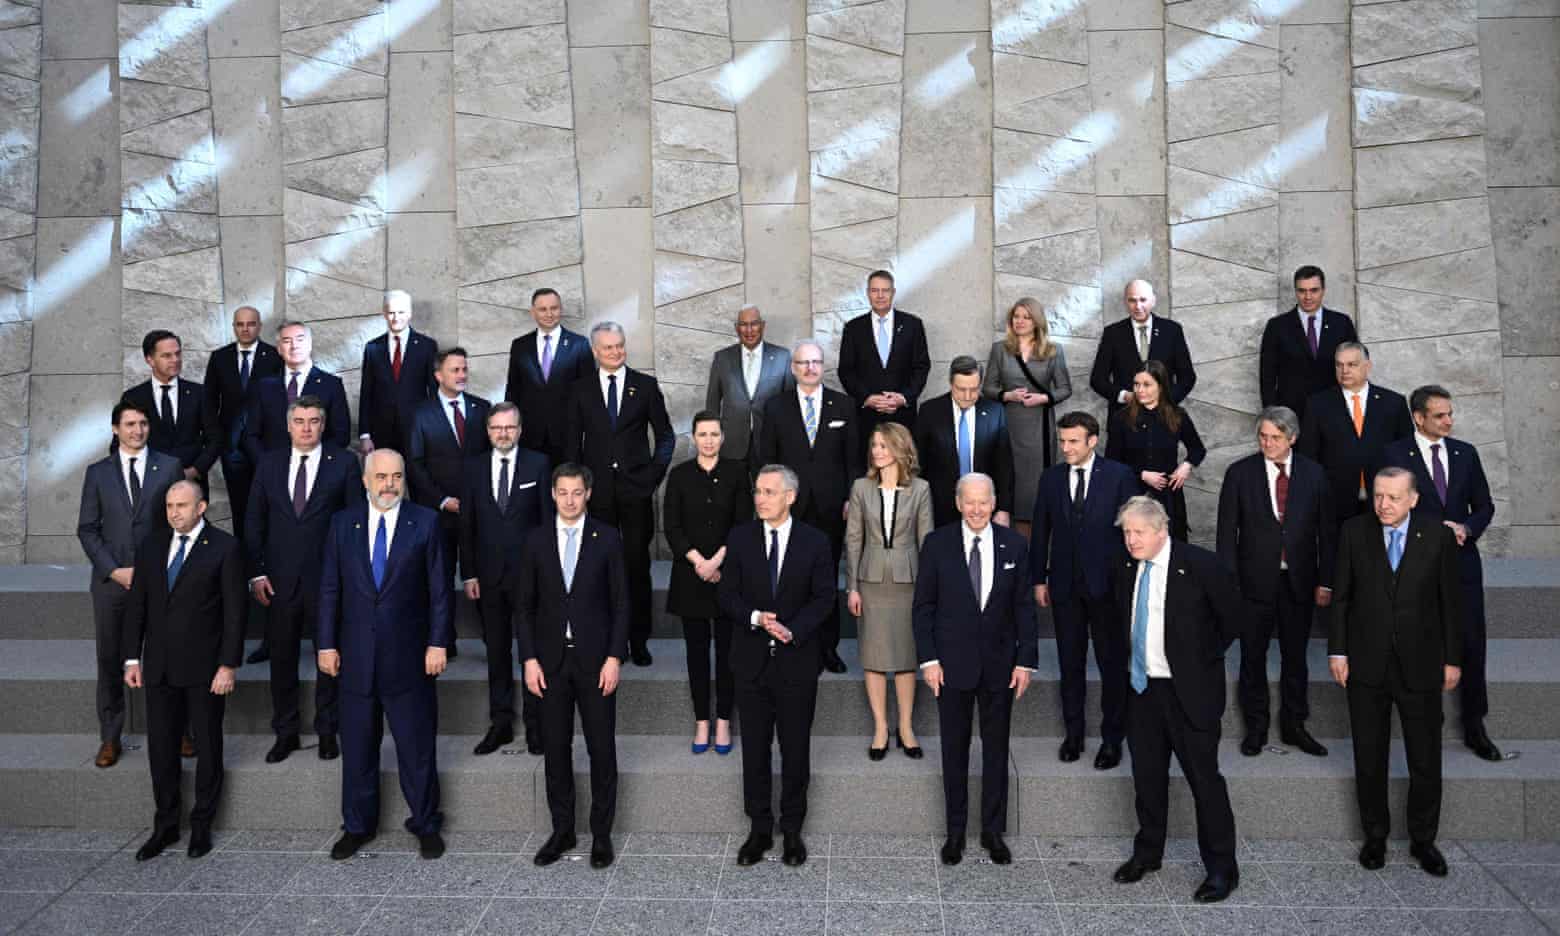 Các nhà lãnh đạo xuất hiện cùng nhau trong hội nghị thượng đỉnh NATO (ảnh: CNN)